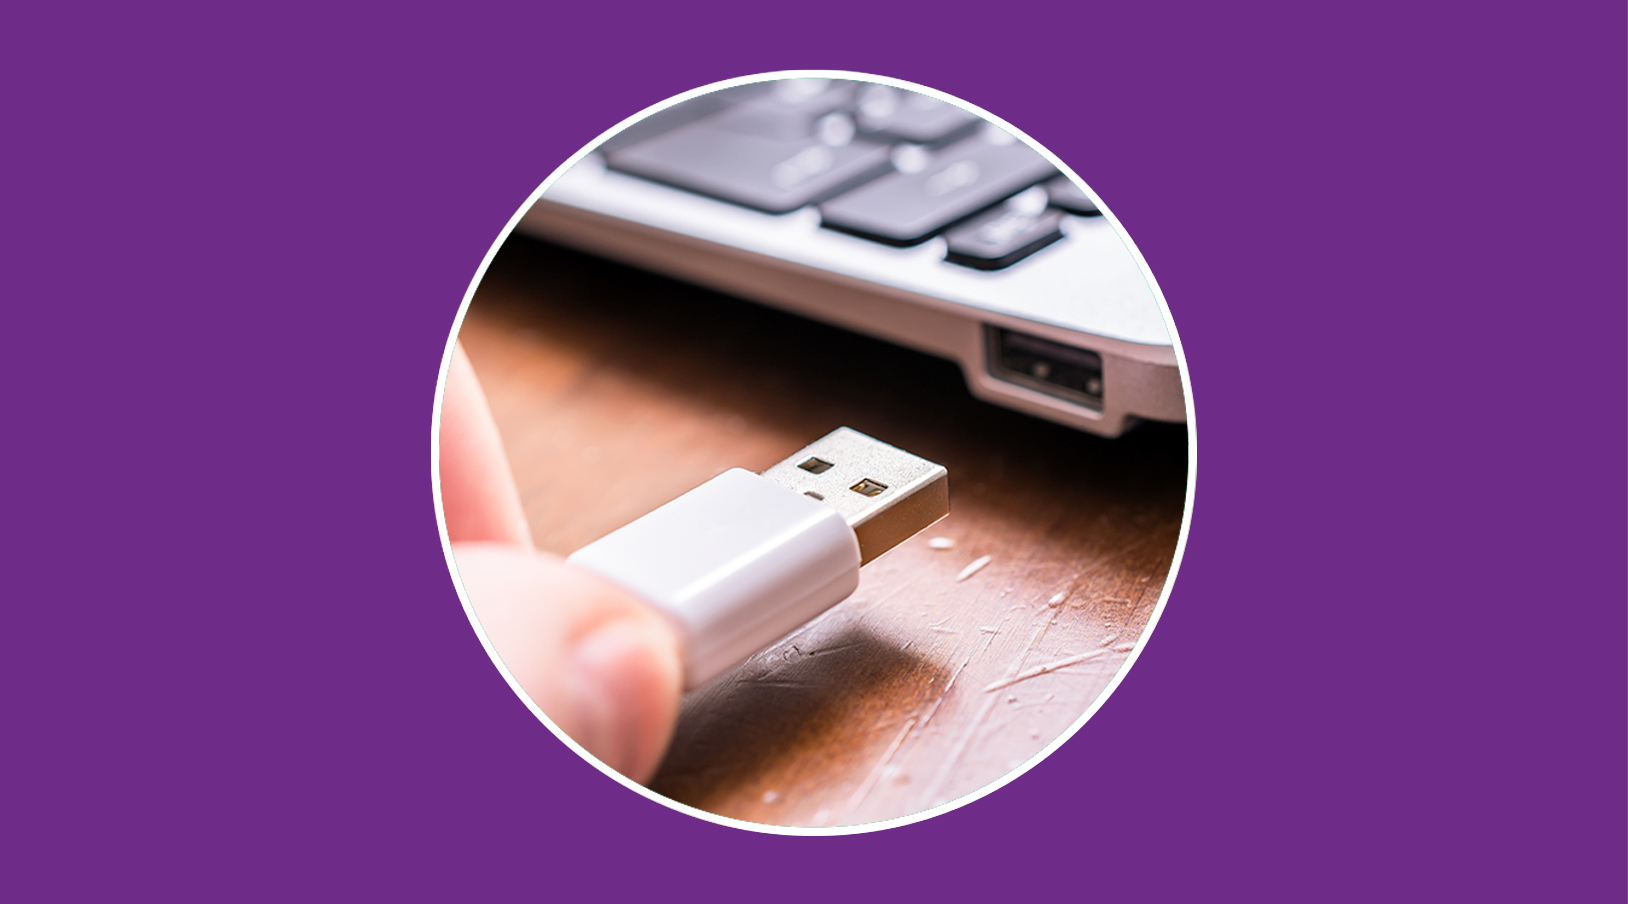 Conector USB no funciona: errores comunes y soluciones